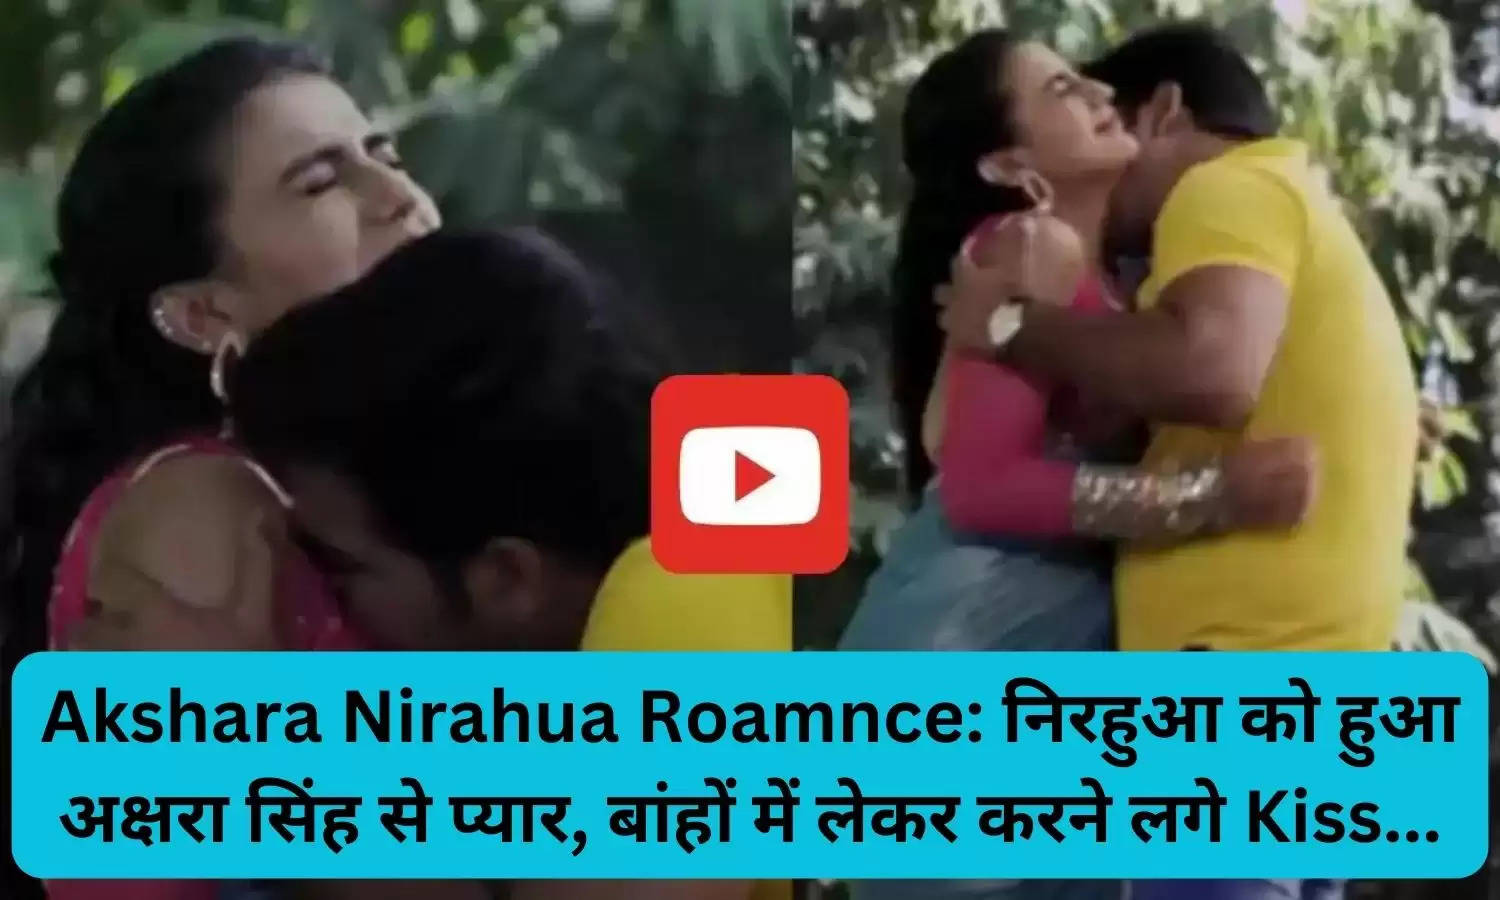 Akshara Nirahua Roamnce: निरहुआ को हुआ अक्षरा सिंह से प्यार, बांहों में लेकर करने लगे Kiss...